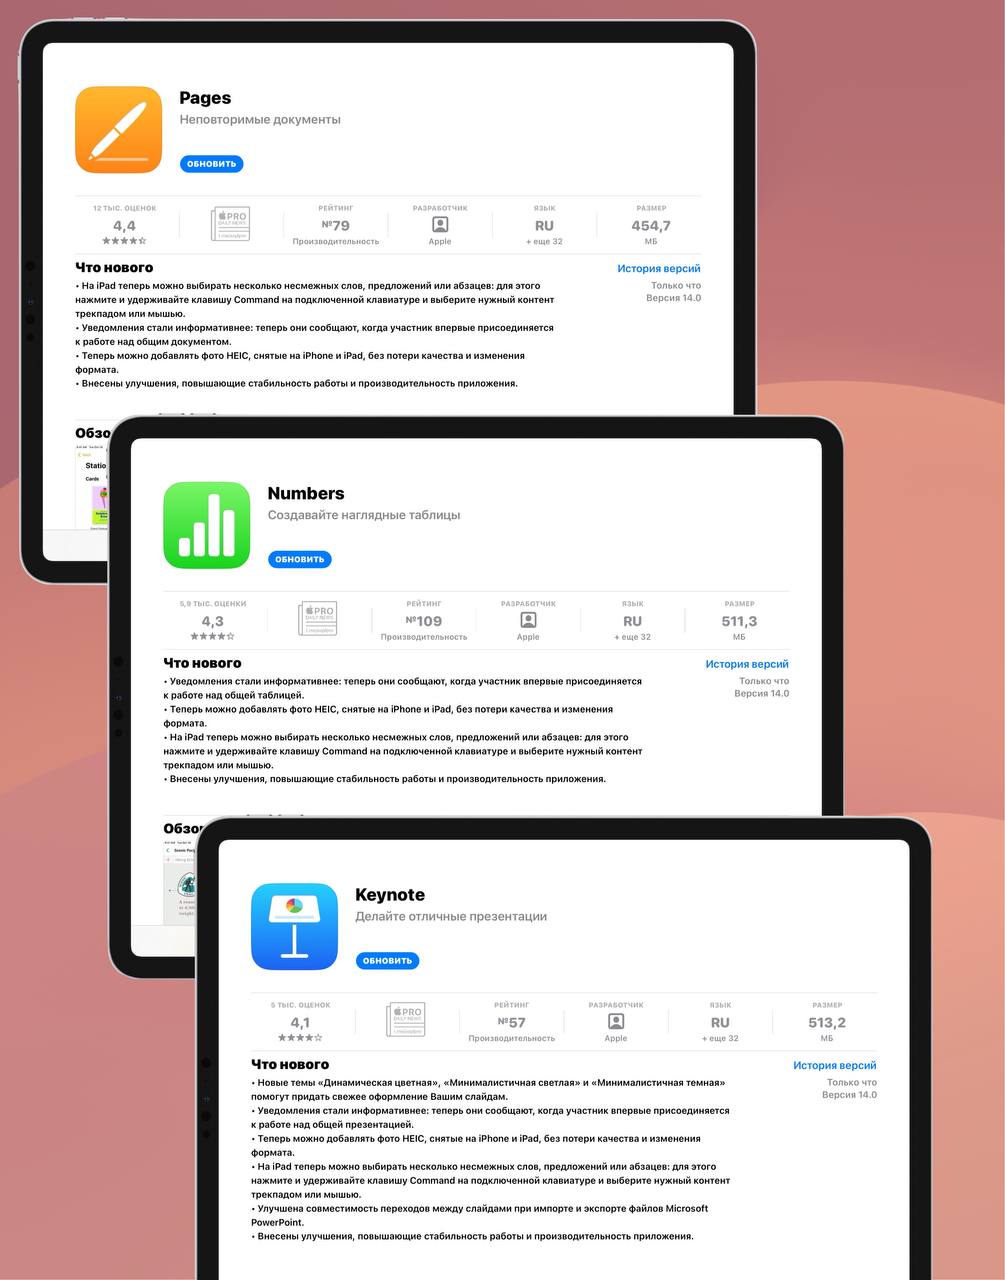 Обновить приложения Pages, Numbers и Keynote можно уже сейчас в App Store. Также в ближайшее время станет доступно обновление для версий macOS.